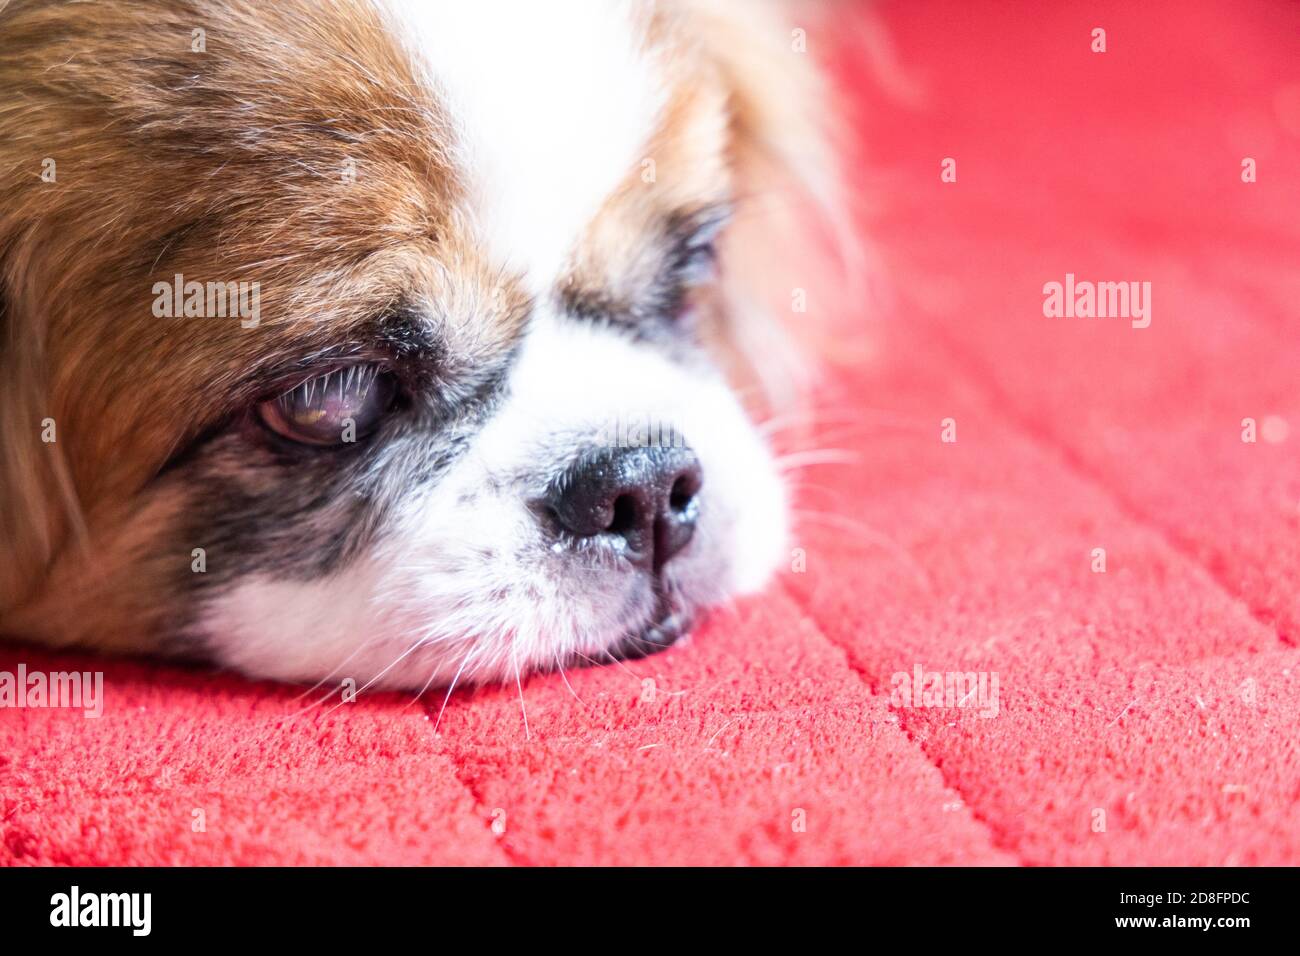 Cane pekinese cieco di vecchiaia con cataratta su entrambi gli occhi Foto Stock